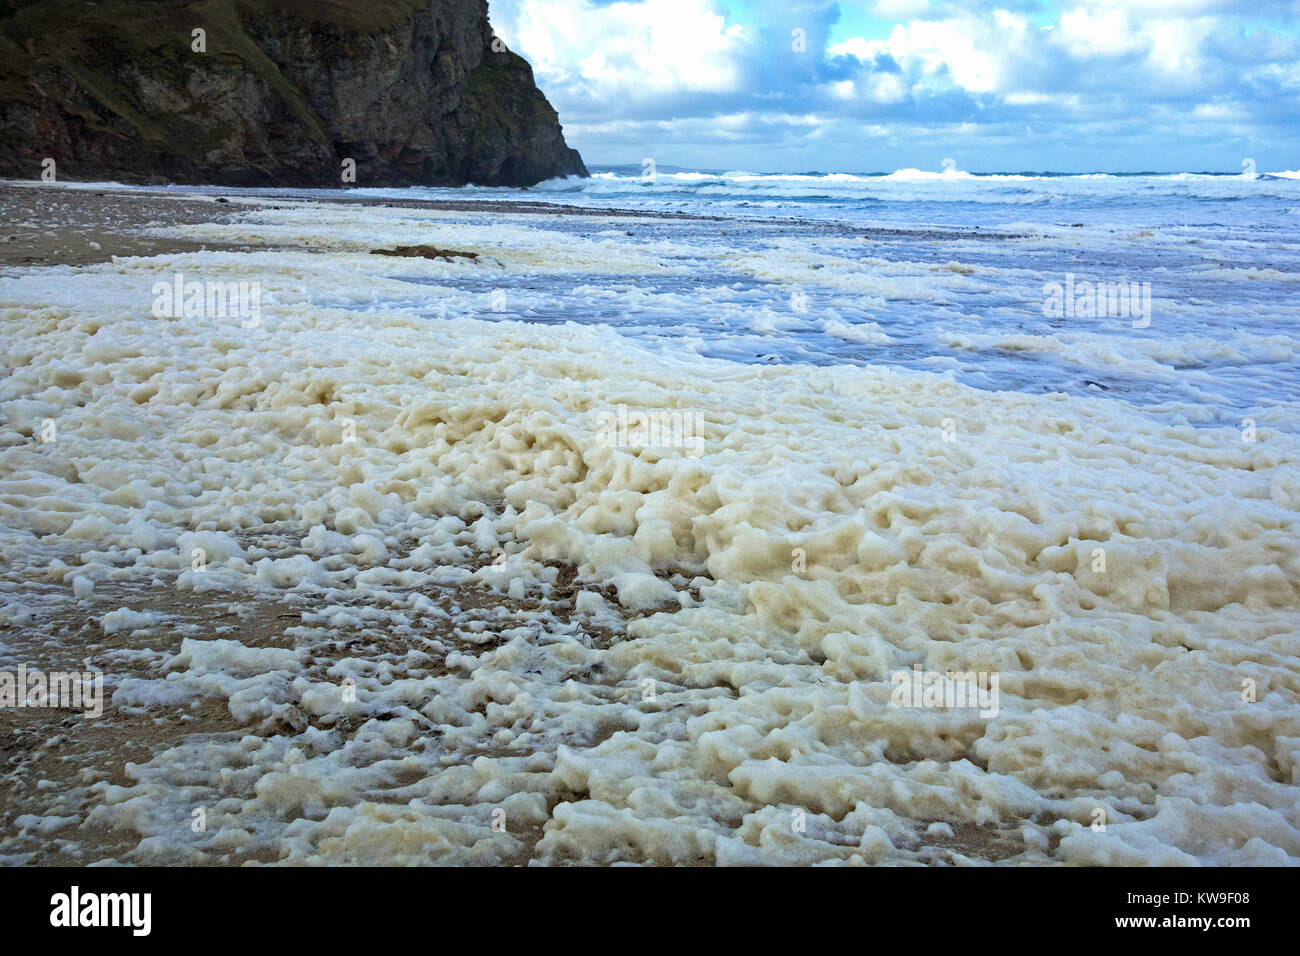 Schiuma di mare oceano, schiuma, spiaggia schiuma o spume sulla spiaggia porthtowan cornwall, Regno Unito, la schiuma è generalmente creata durante le tempeste. Foto Stock